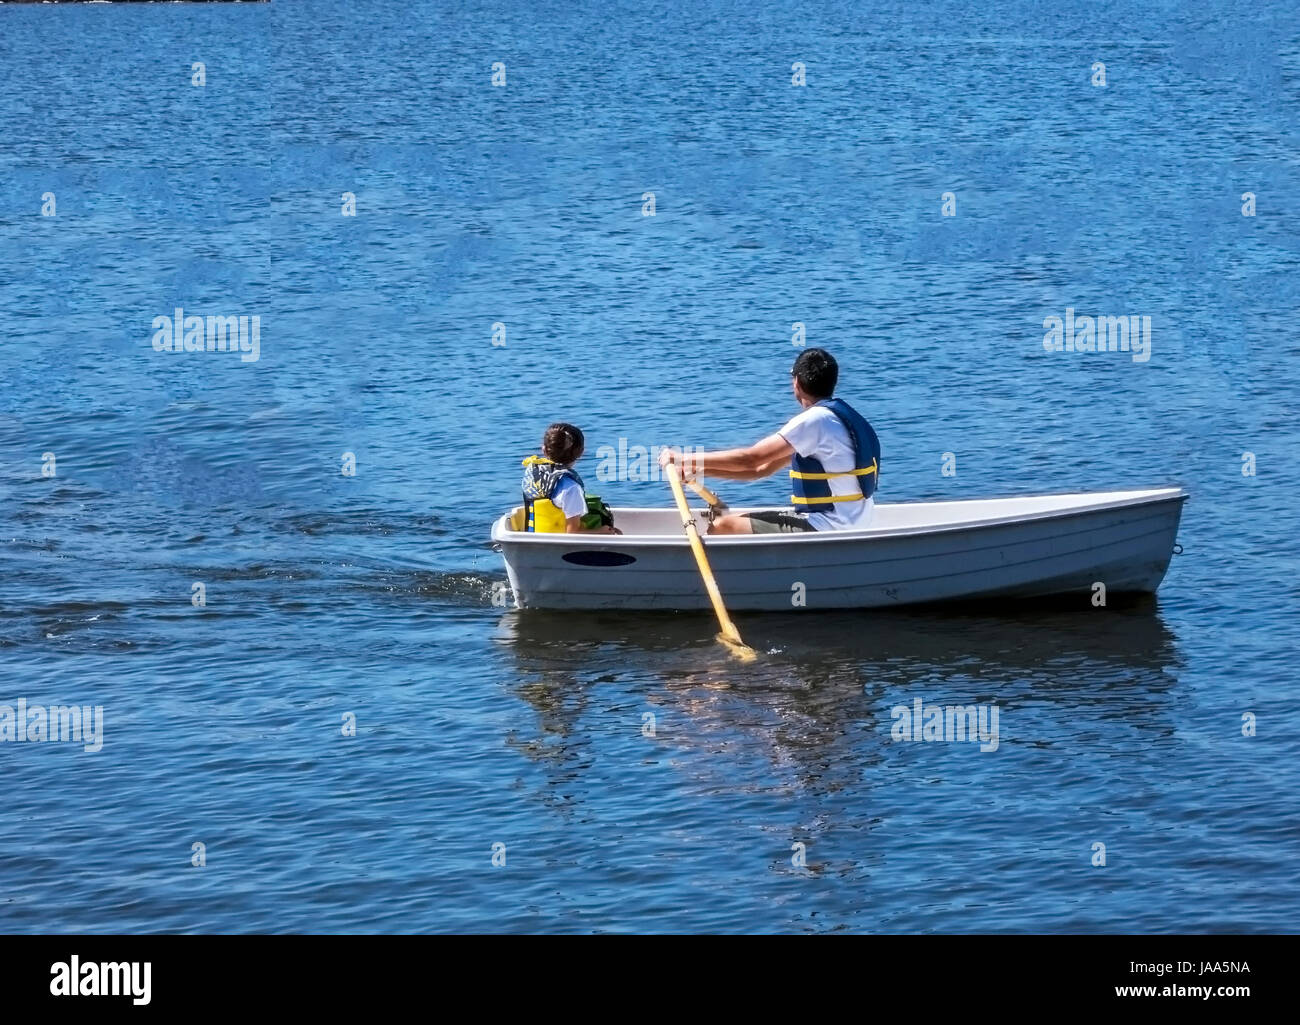 Si tratta di una immagine di un padre e figlio gita presso un lago locale. Immagine è stata scattata in riva al lago del parco di Mountain View, California. Foto Stock